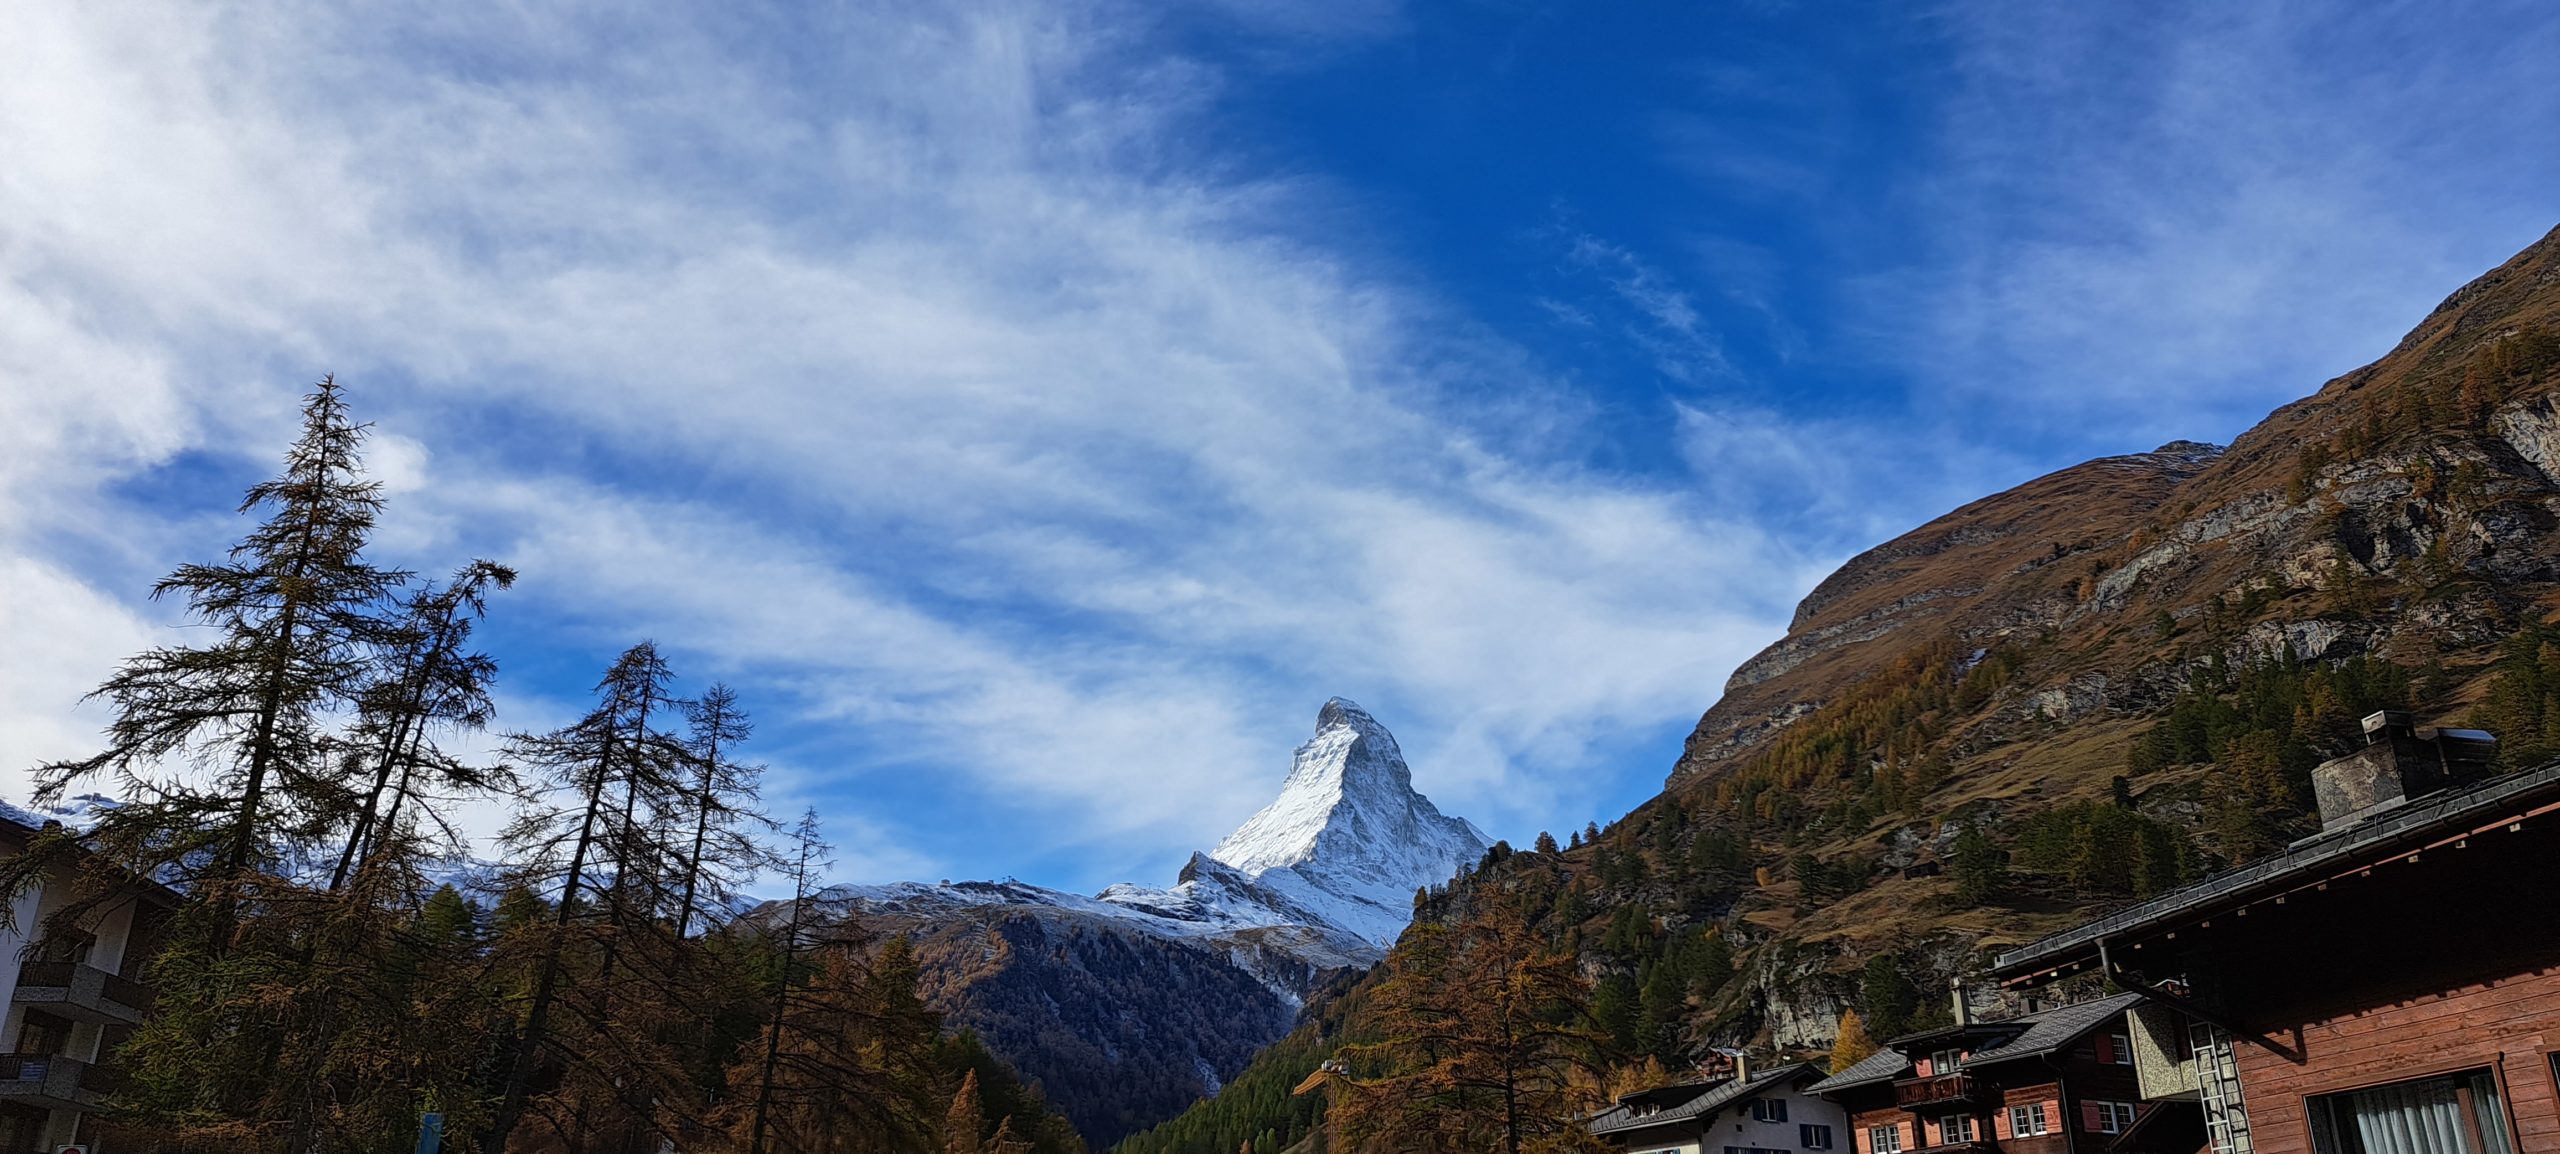 The renowned Matterhorn in Zermatt (Valais)